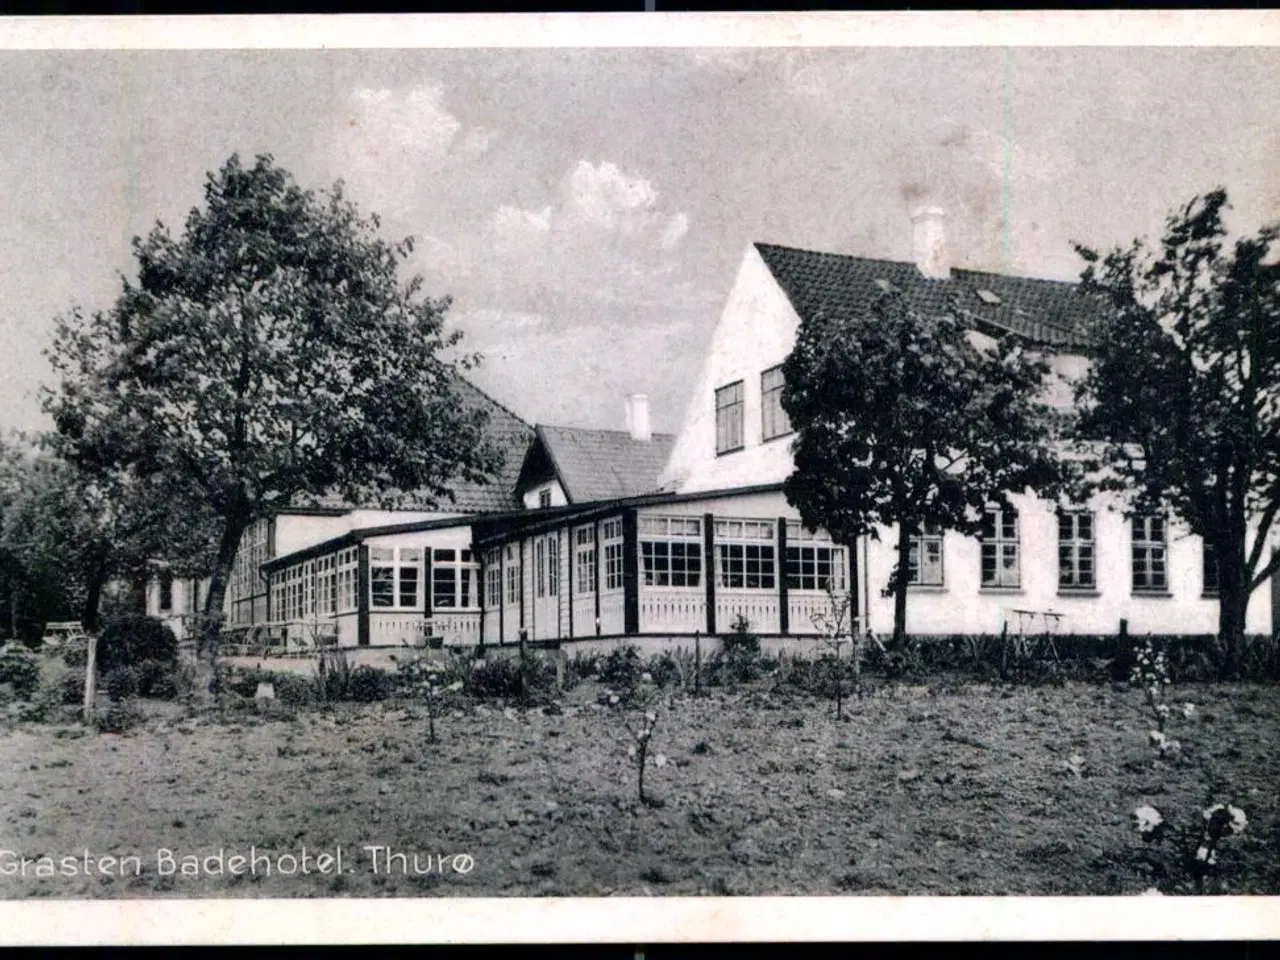 Billede 1 - Grasten Badehotel  - Thurø - Chr. G. Kielbergs Bogh. 69304 - Ubrugt